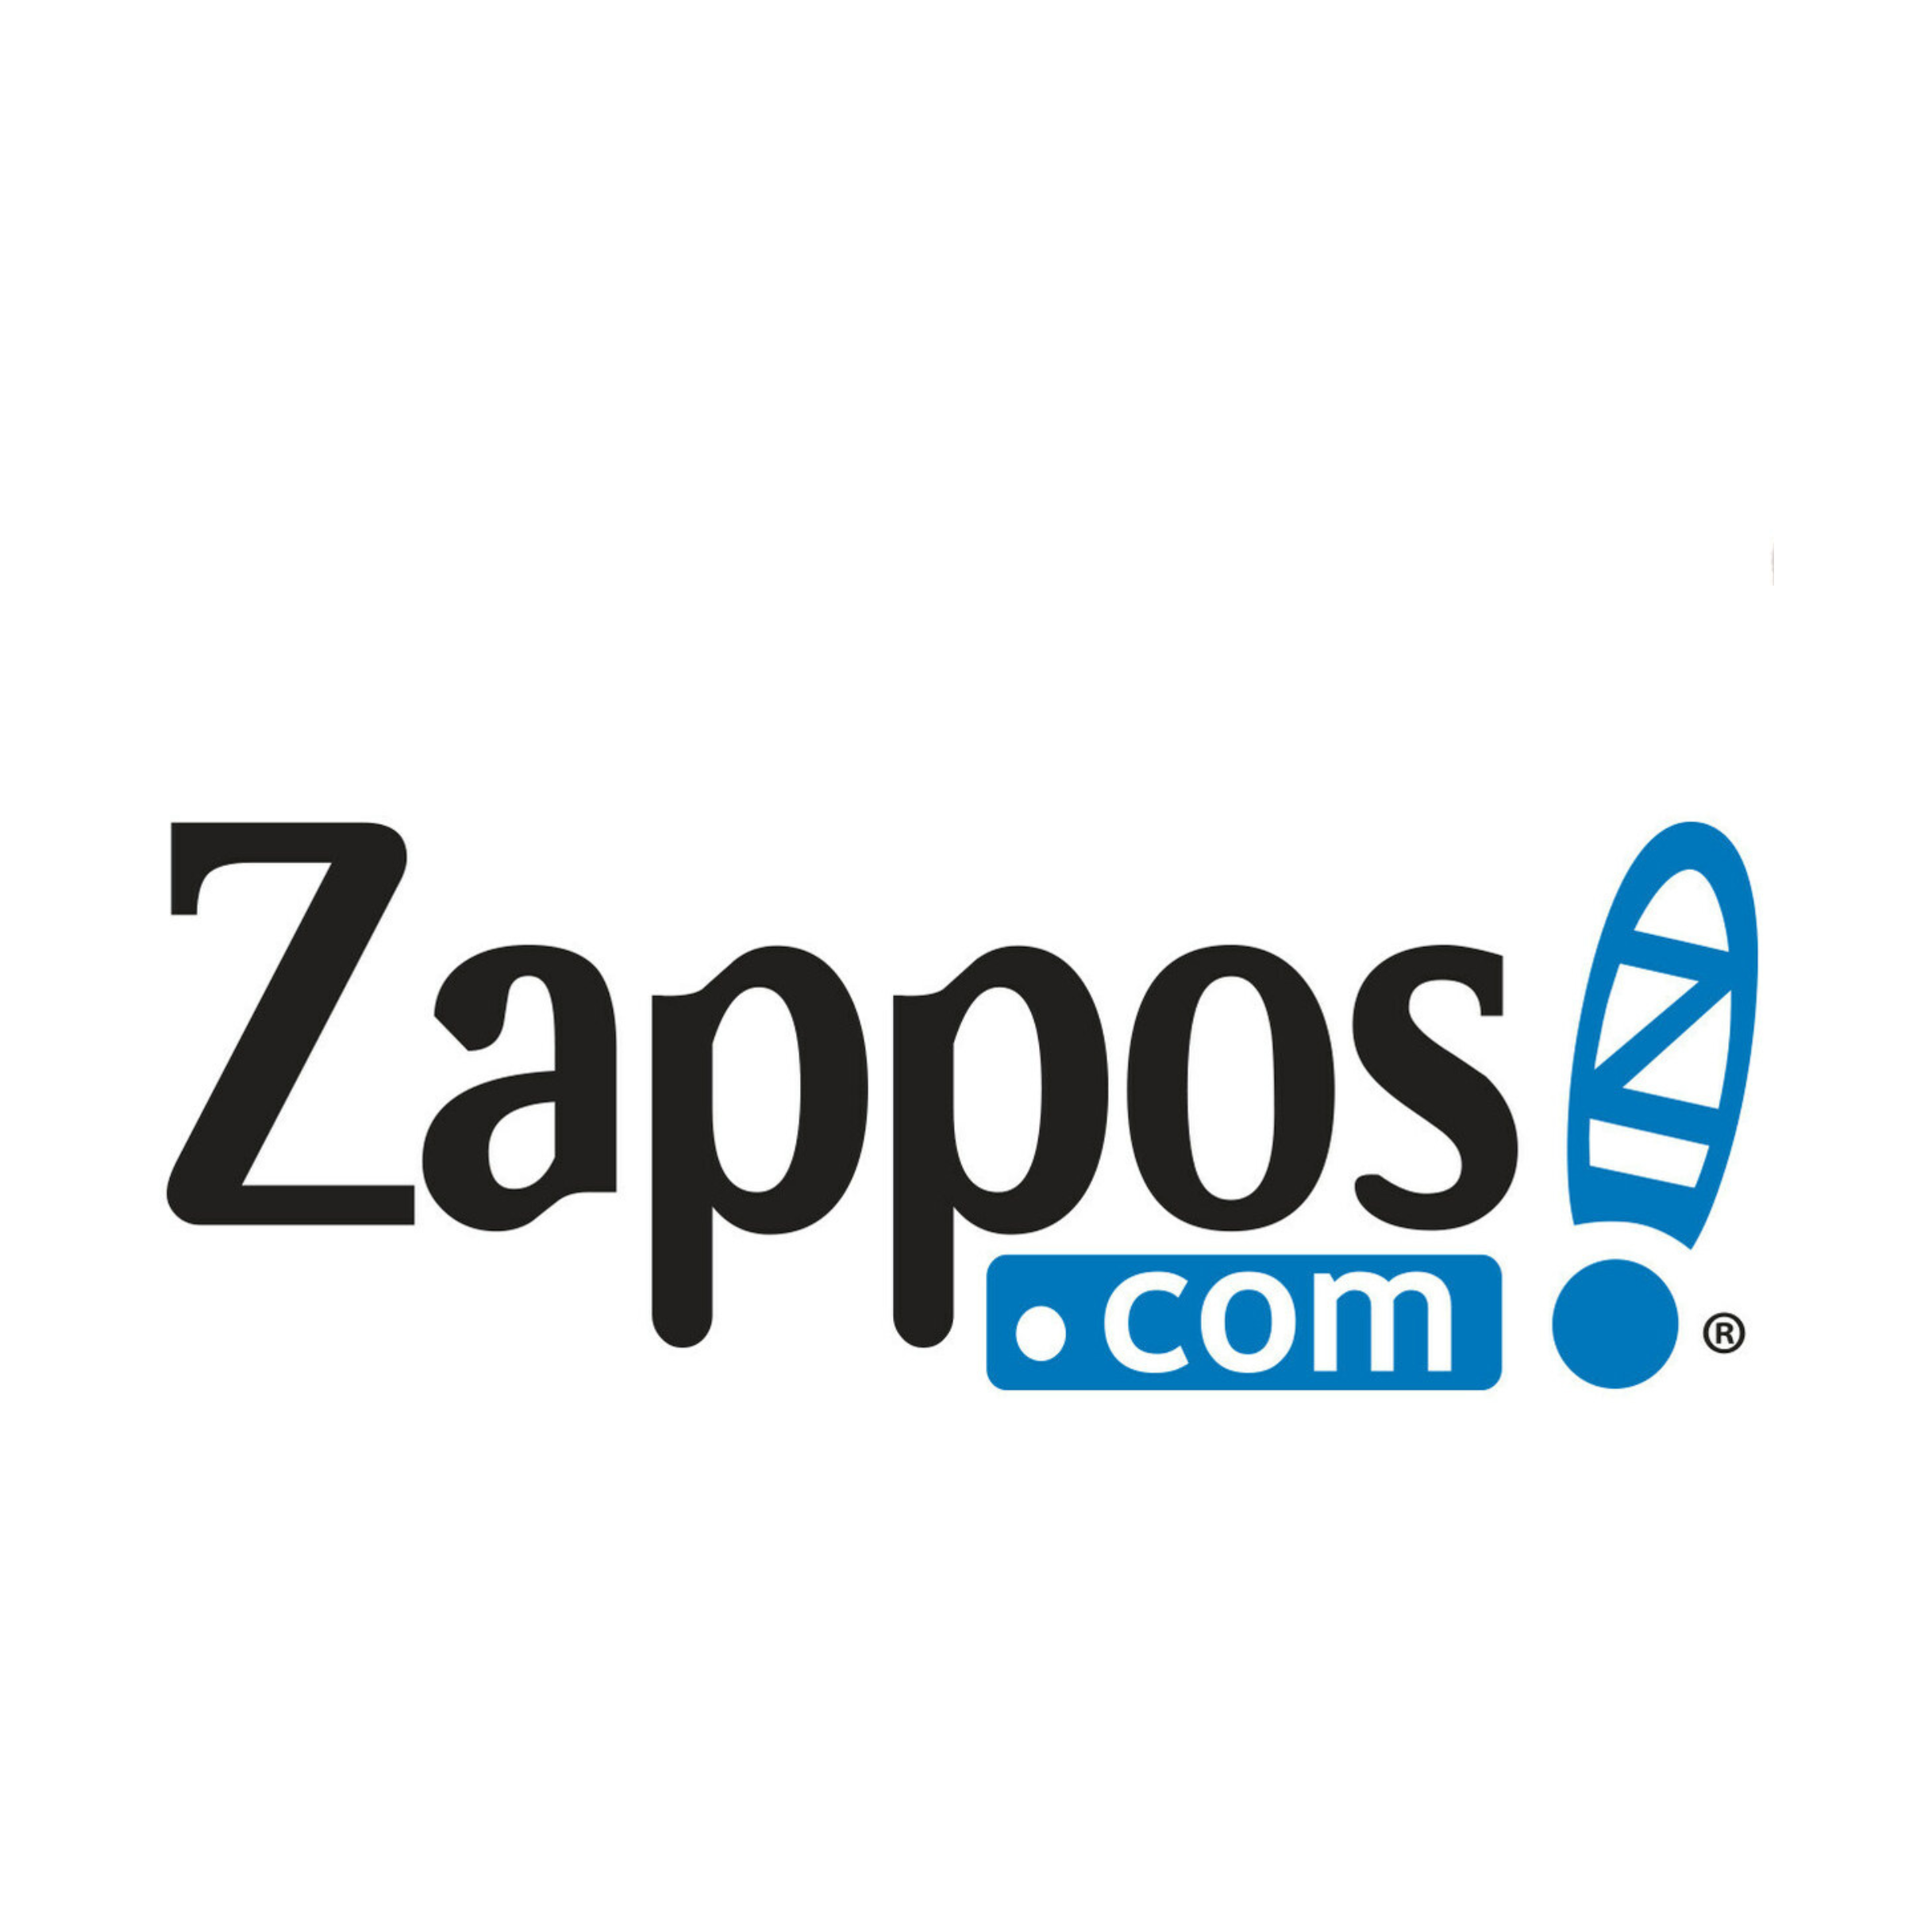 Oferta del Viernes Negro de Zappos